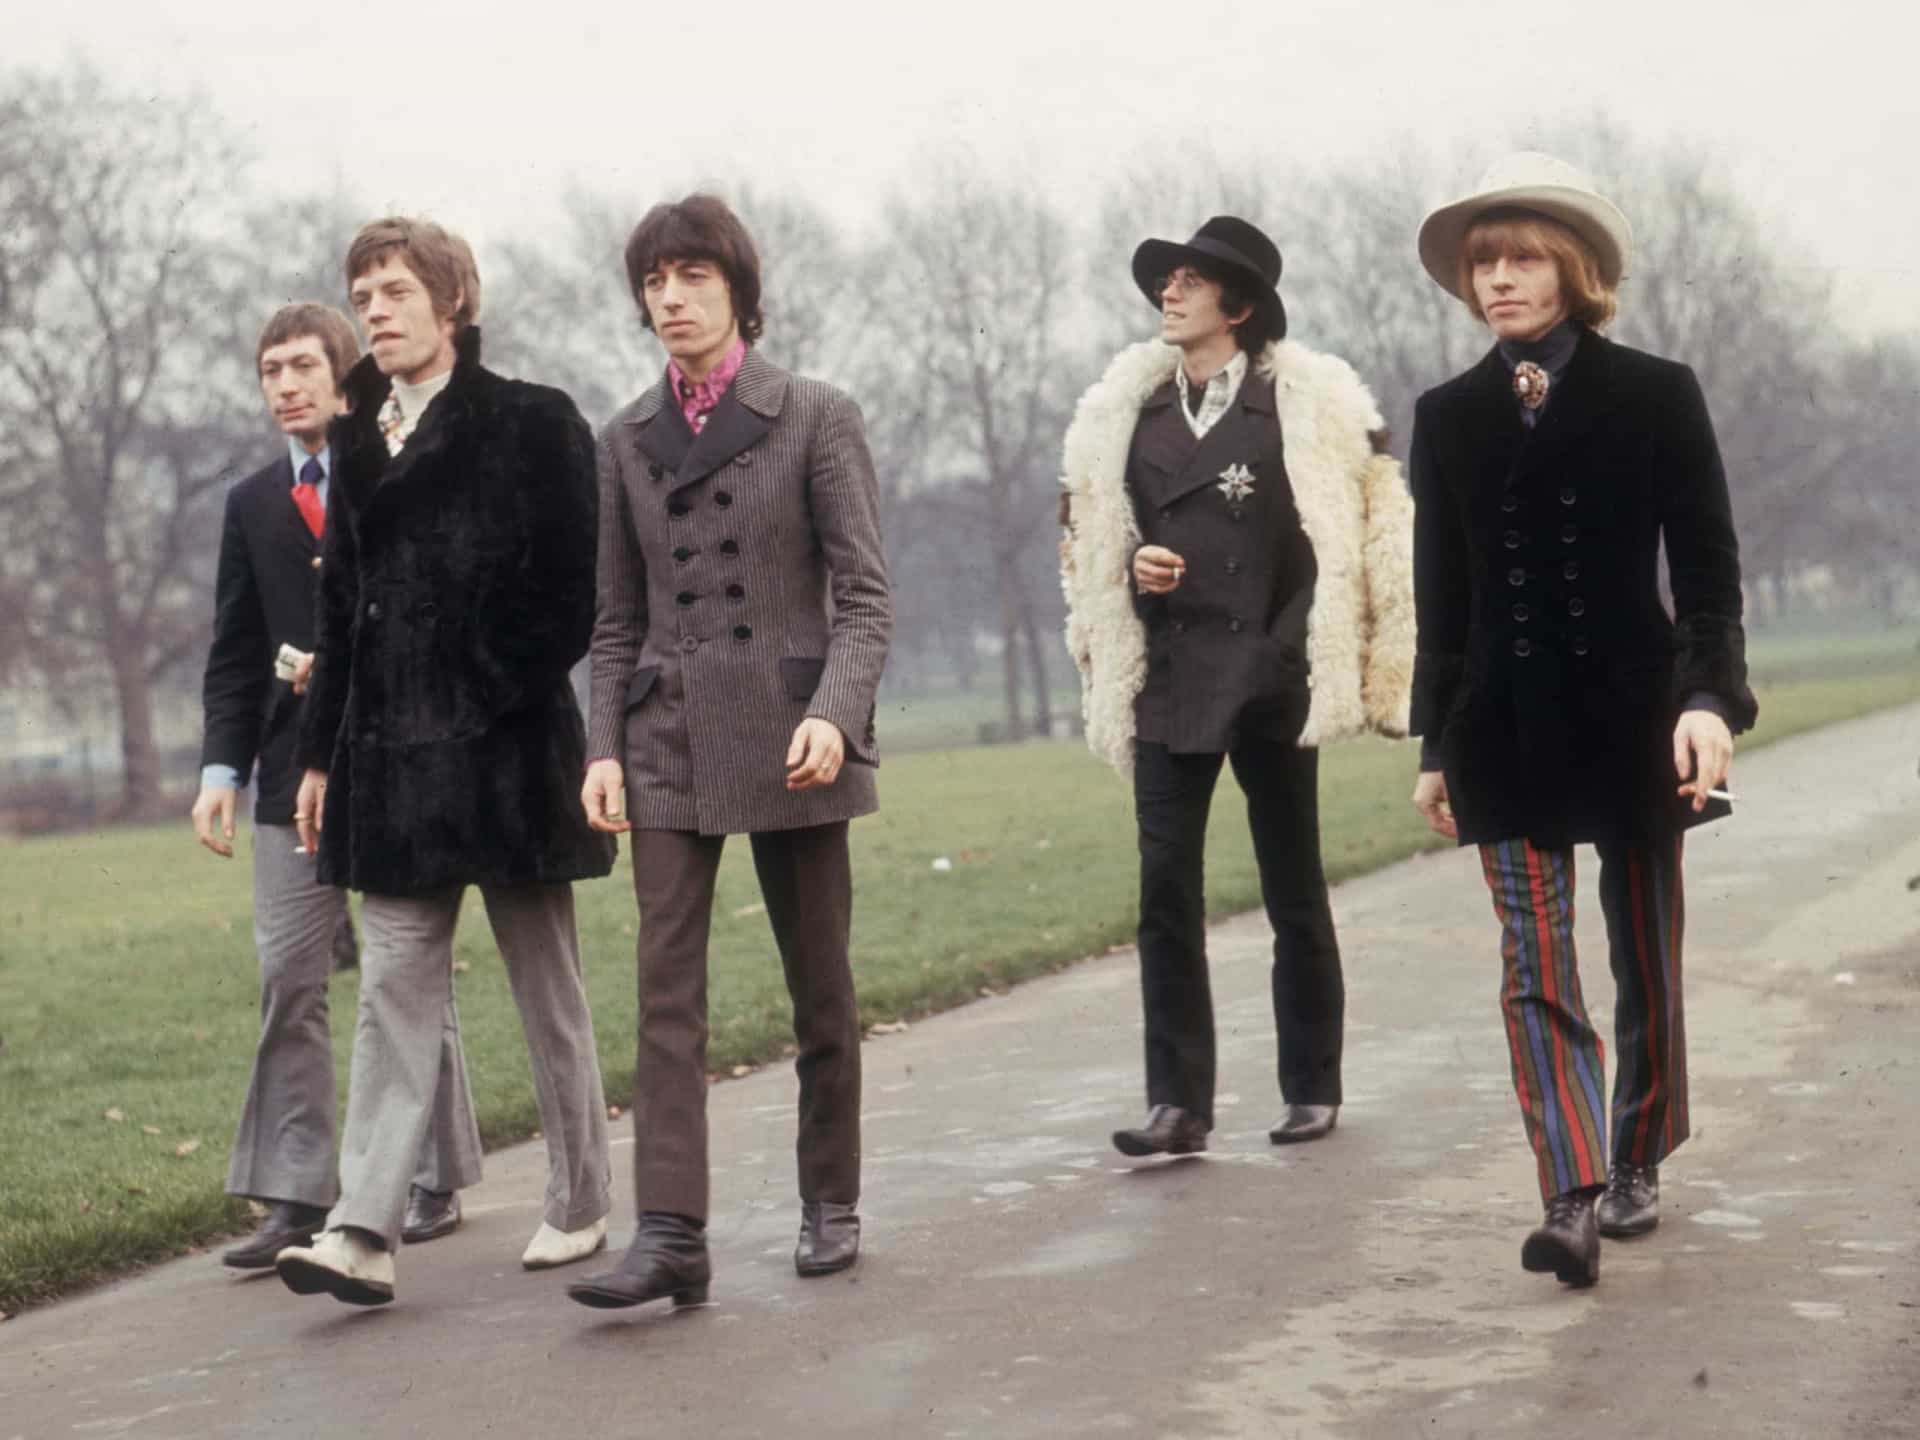 <p>Das <a href="https://de.starsinsider.com/music/256448/musikgeschichte-30-alben-die-die-welt-bewegten" rel="noopener">Album</a> "Beggars Banquet" der Rolling Stones, veröffentlicht im Dezember 1968, beginnt mit dem legendären "Sympathy for the Devil".</p>